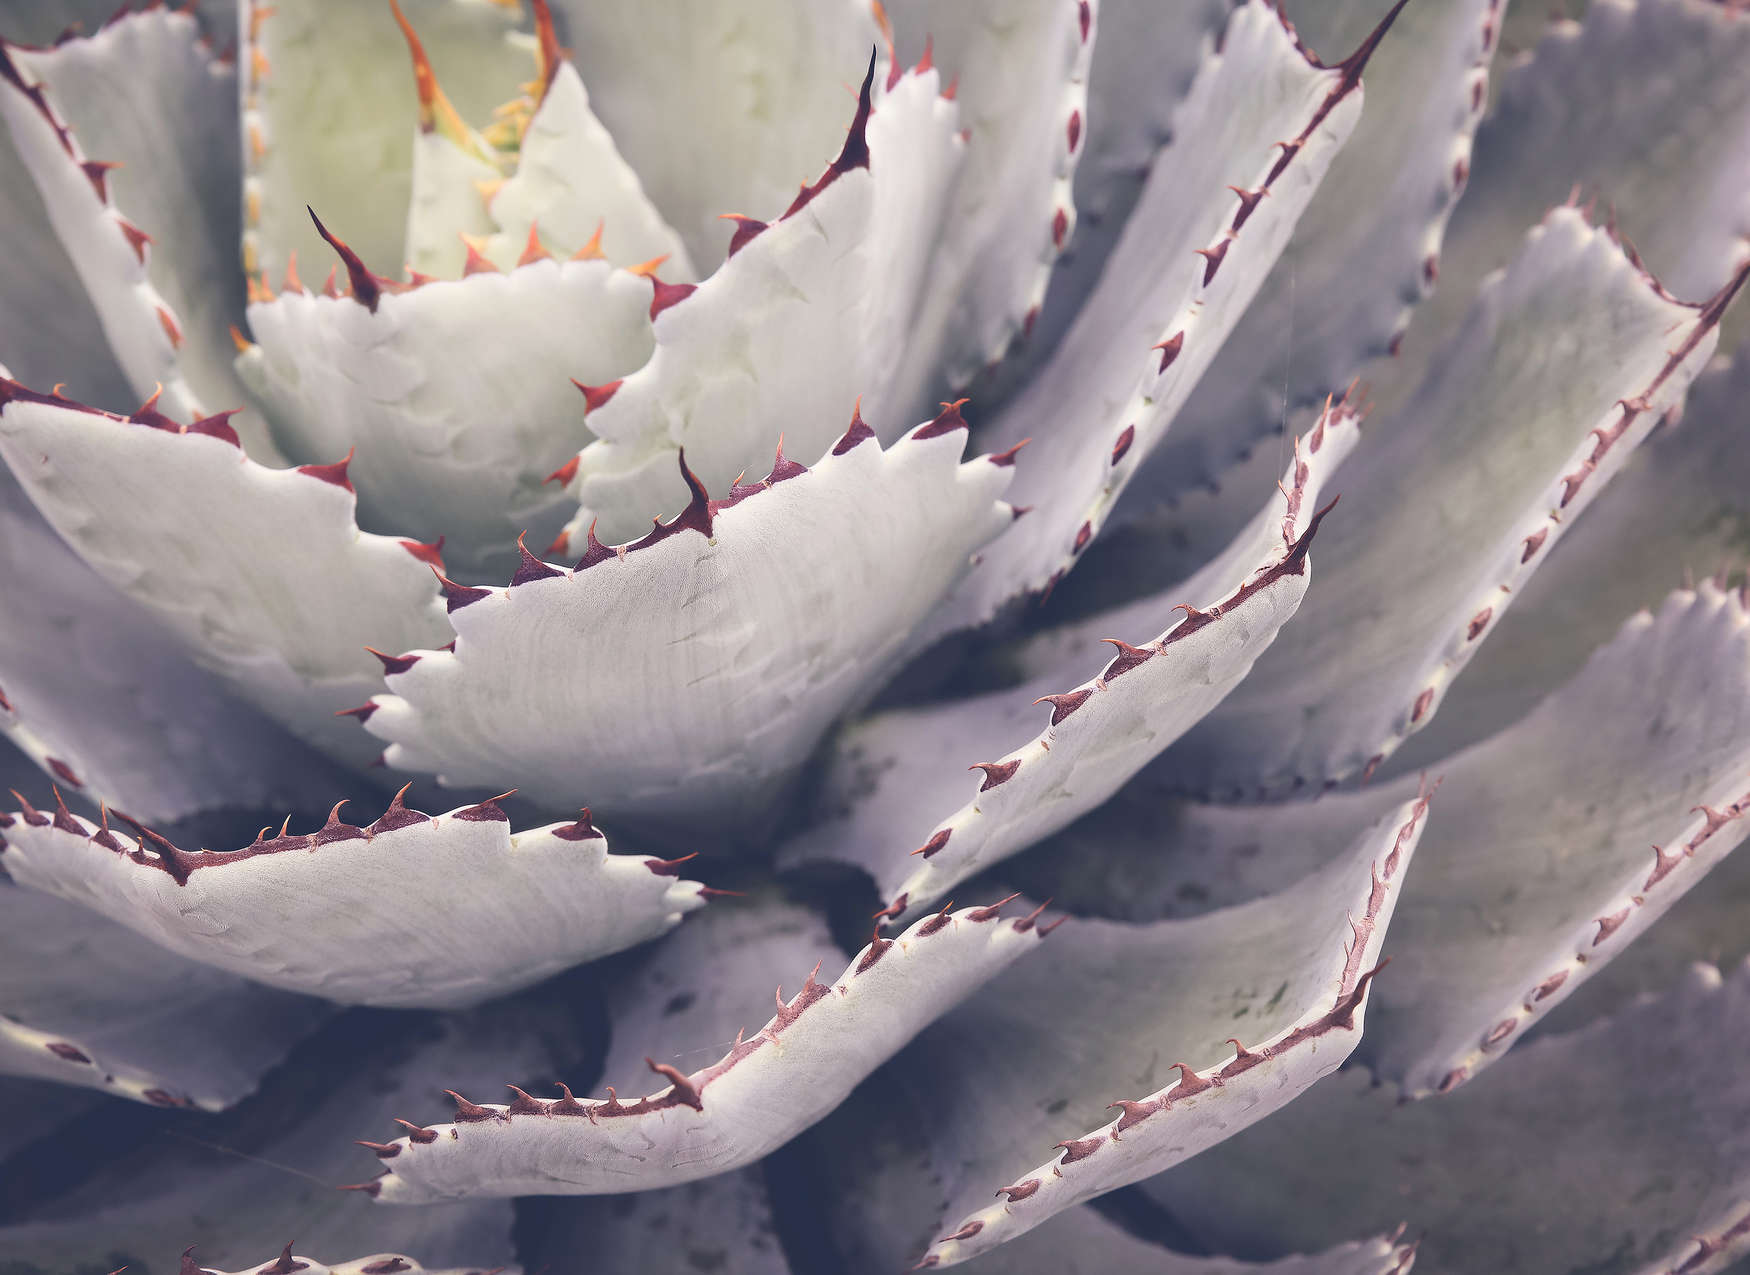             Cactus Close Up Onderlaag behang - Groen
        